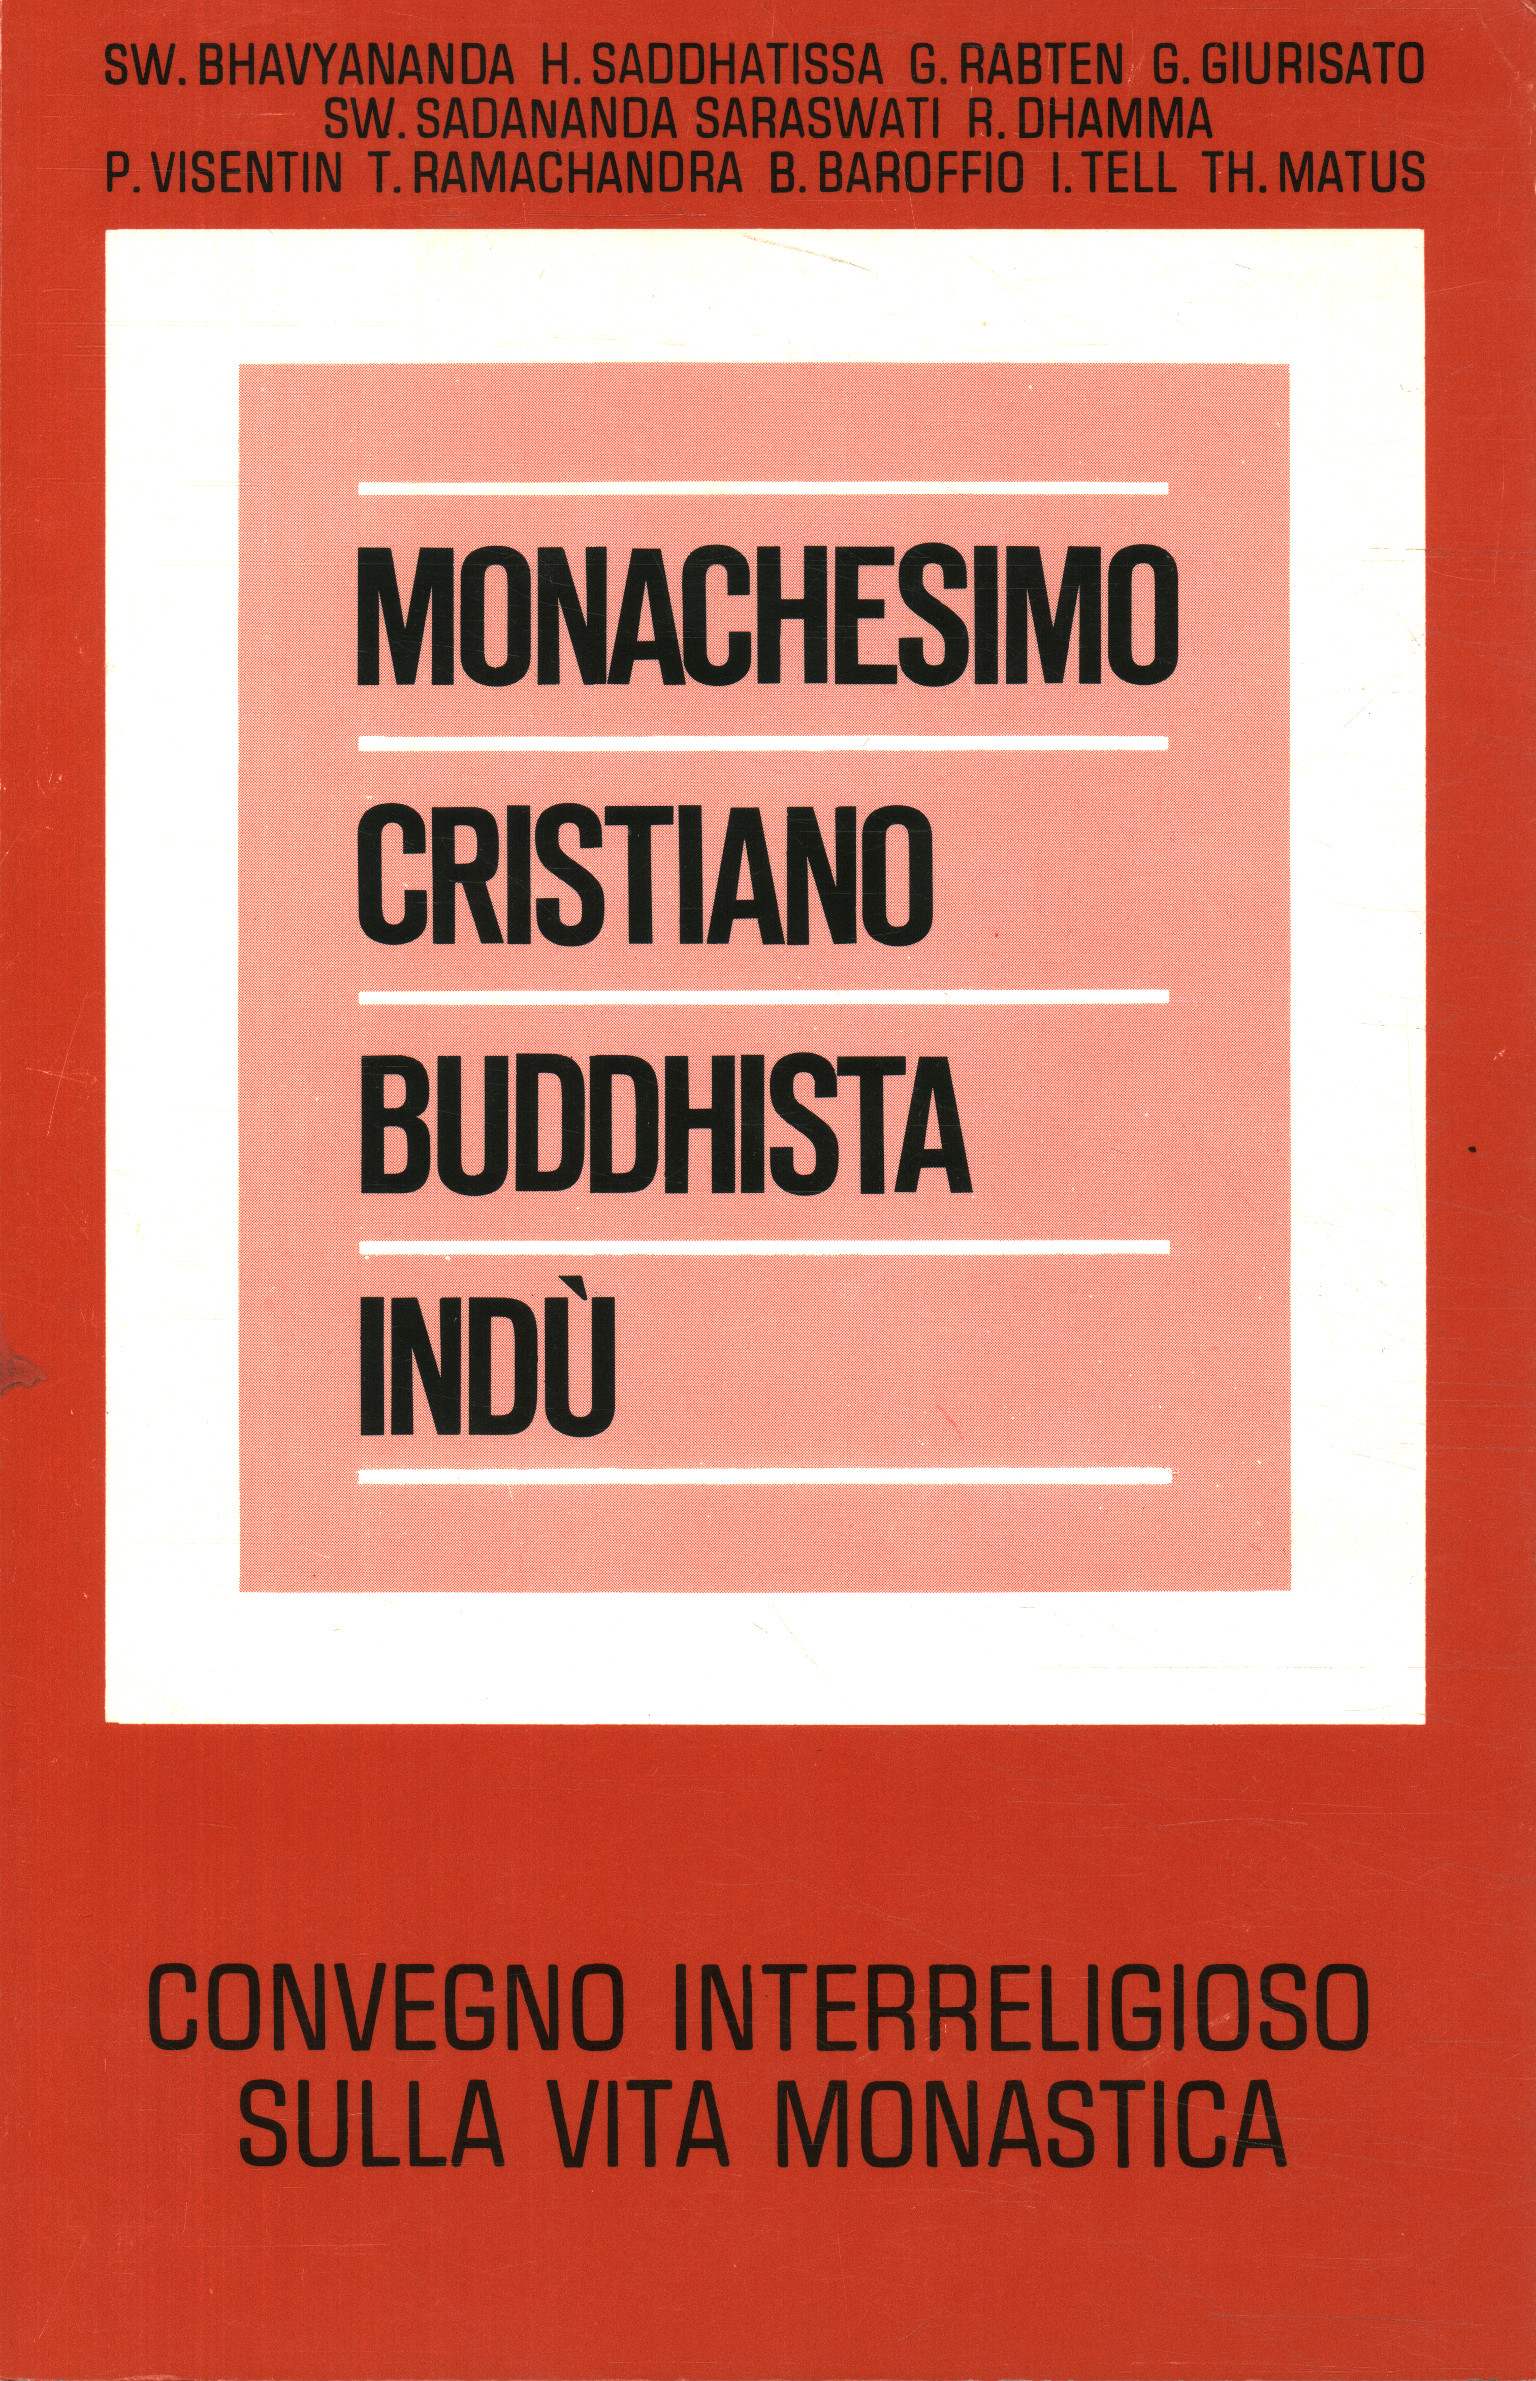 Hindu-buddhistisches christliches Mönchtum